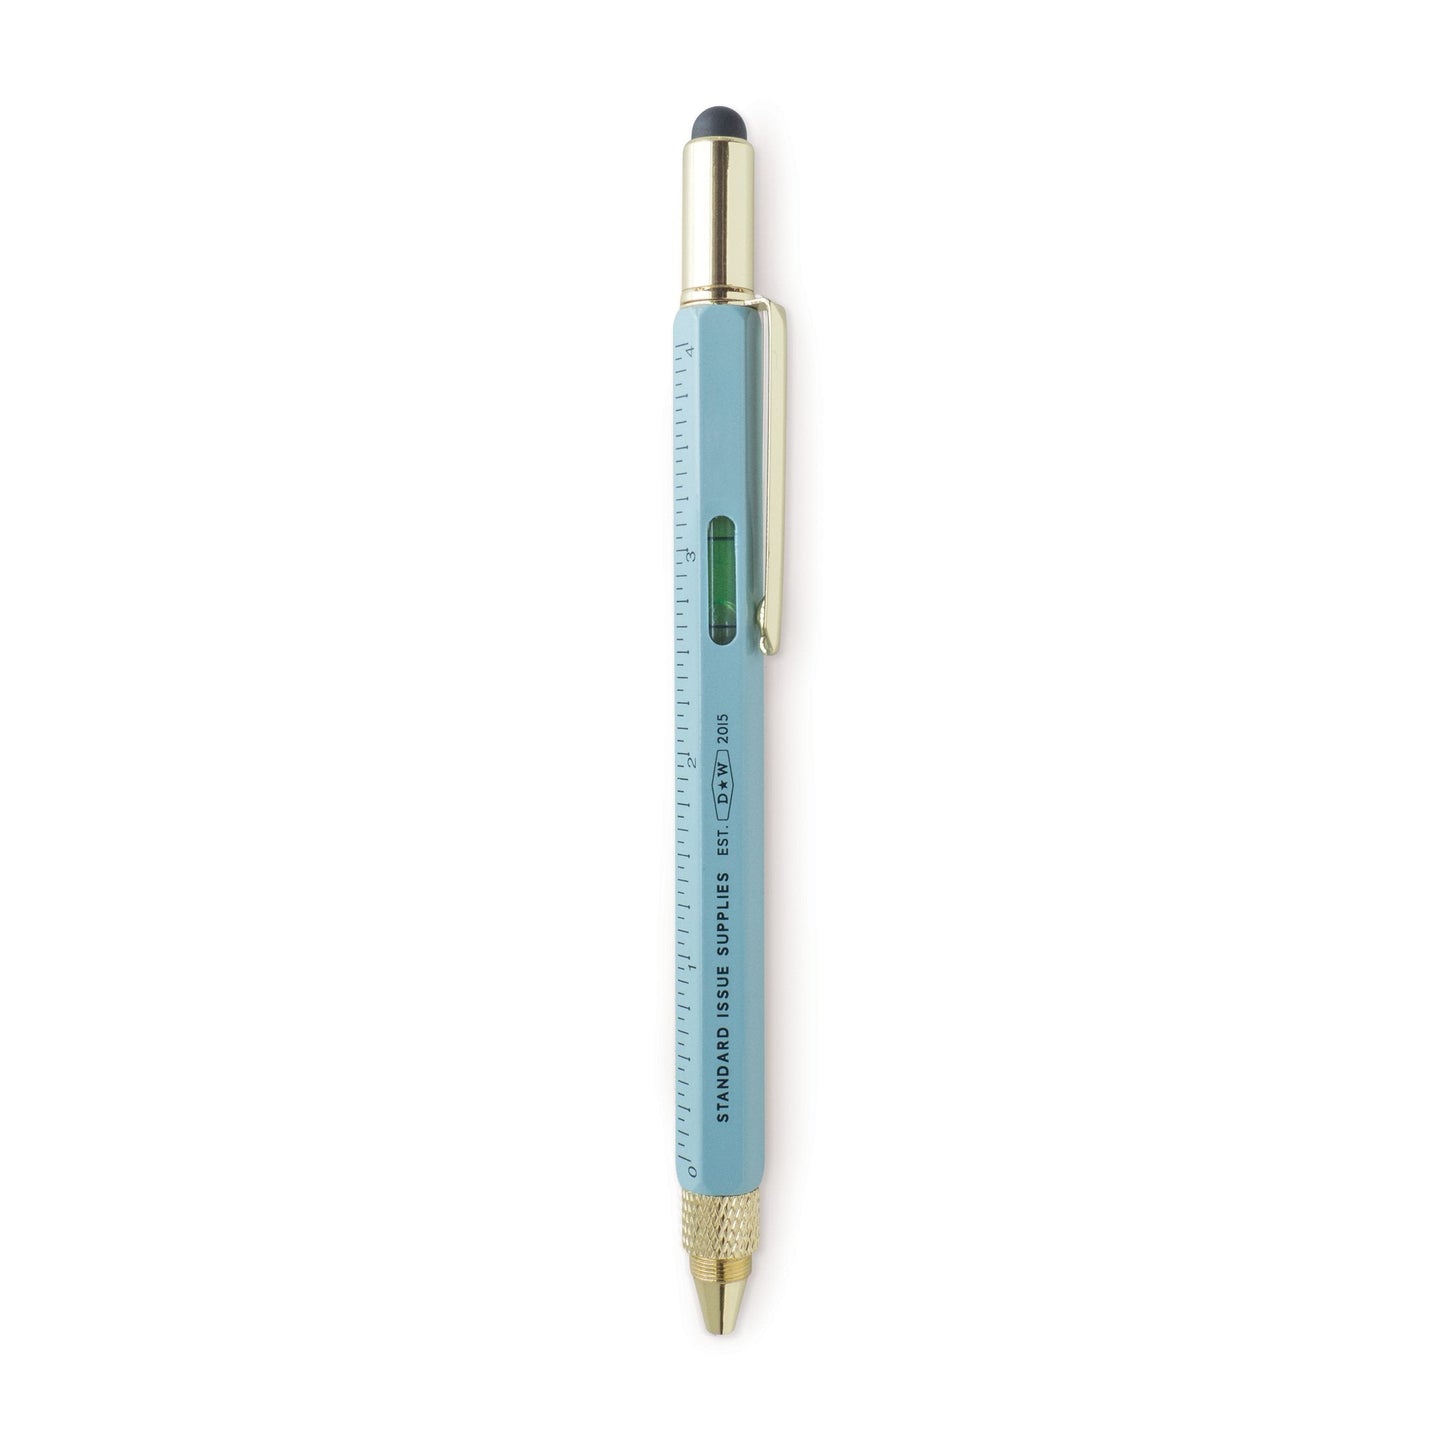 Blue 6-in-1 Multi-Tool Pen